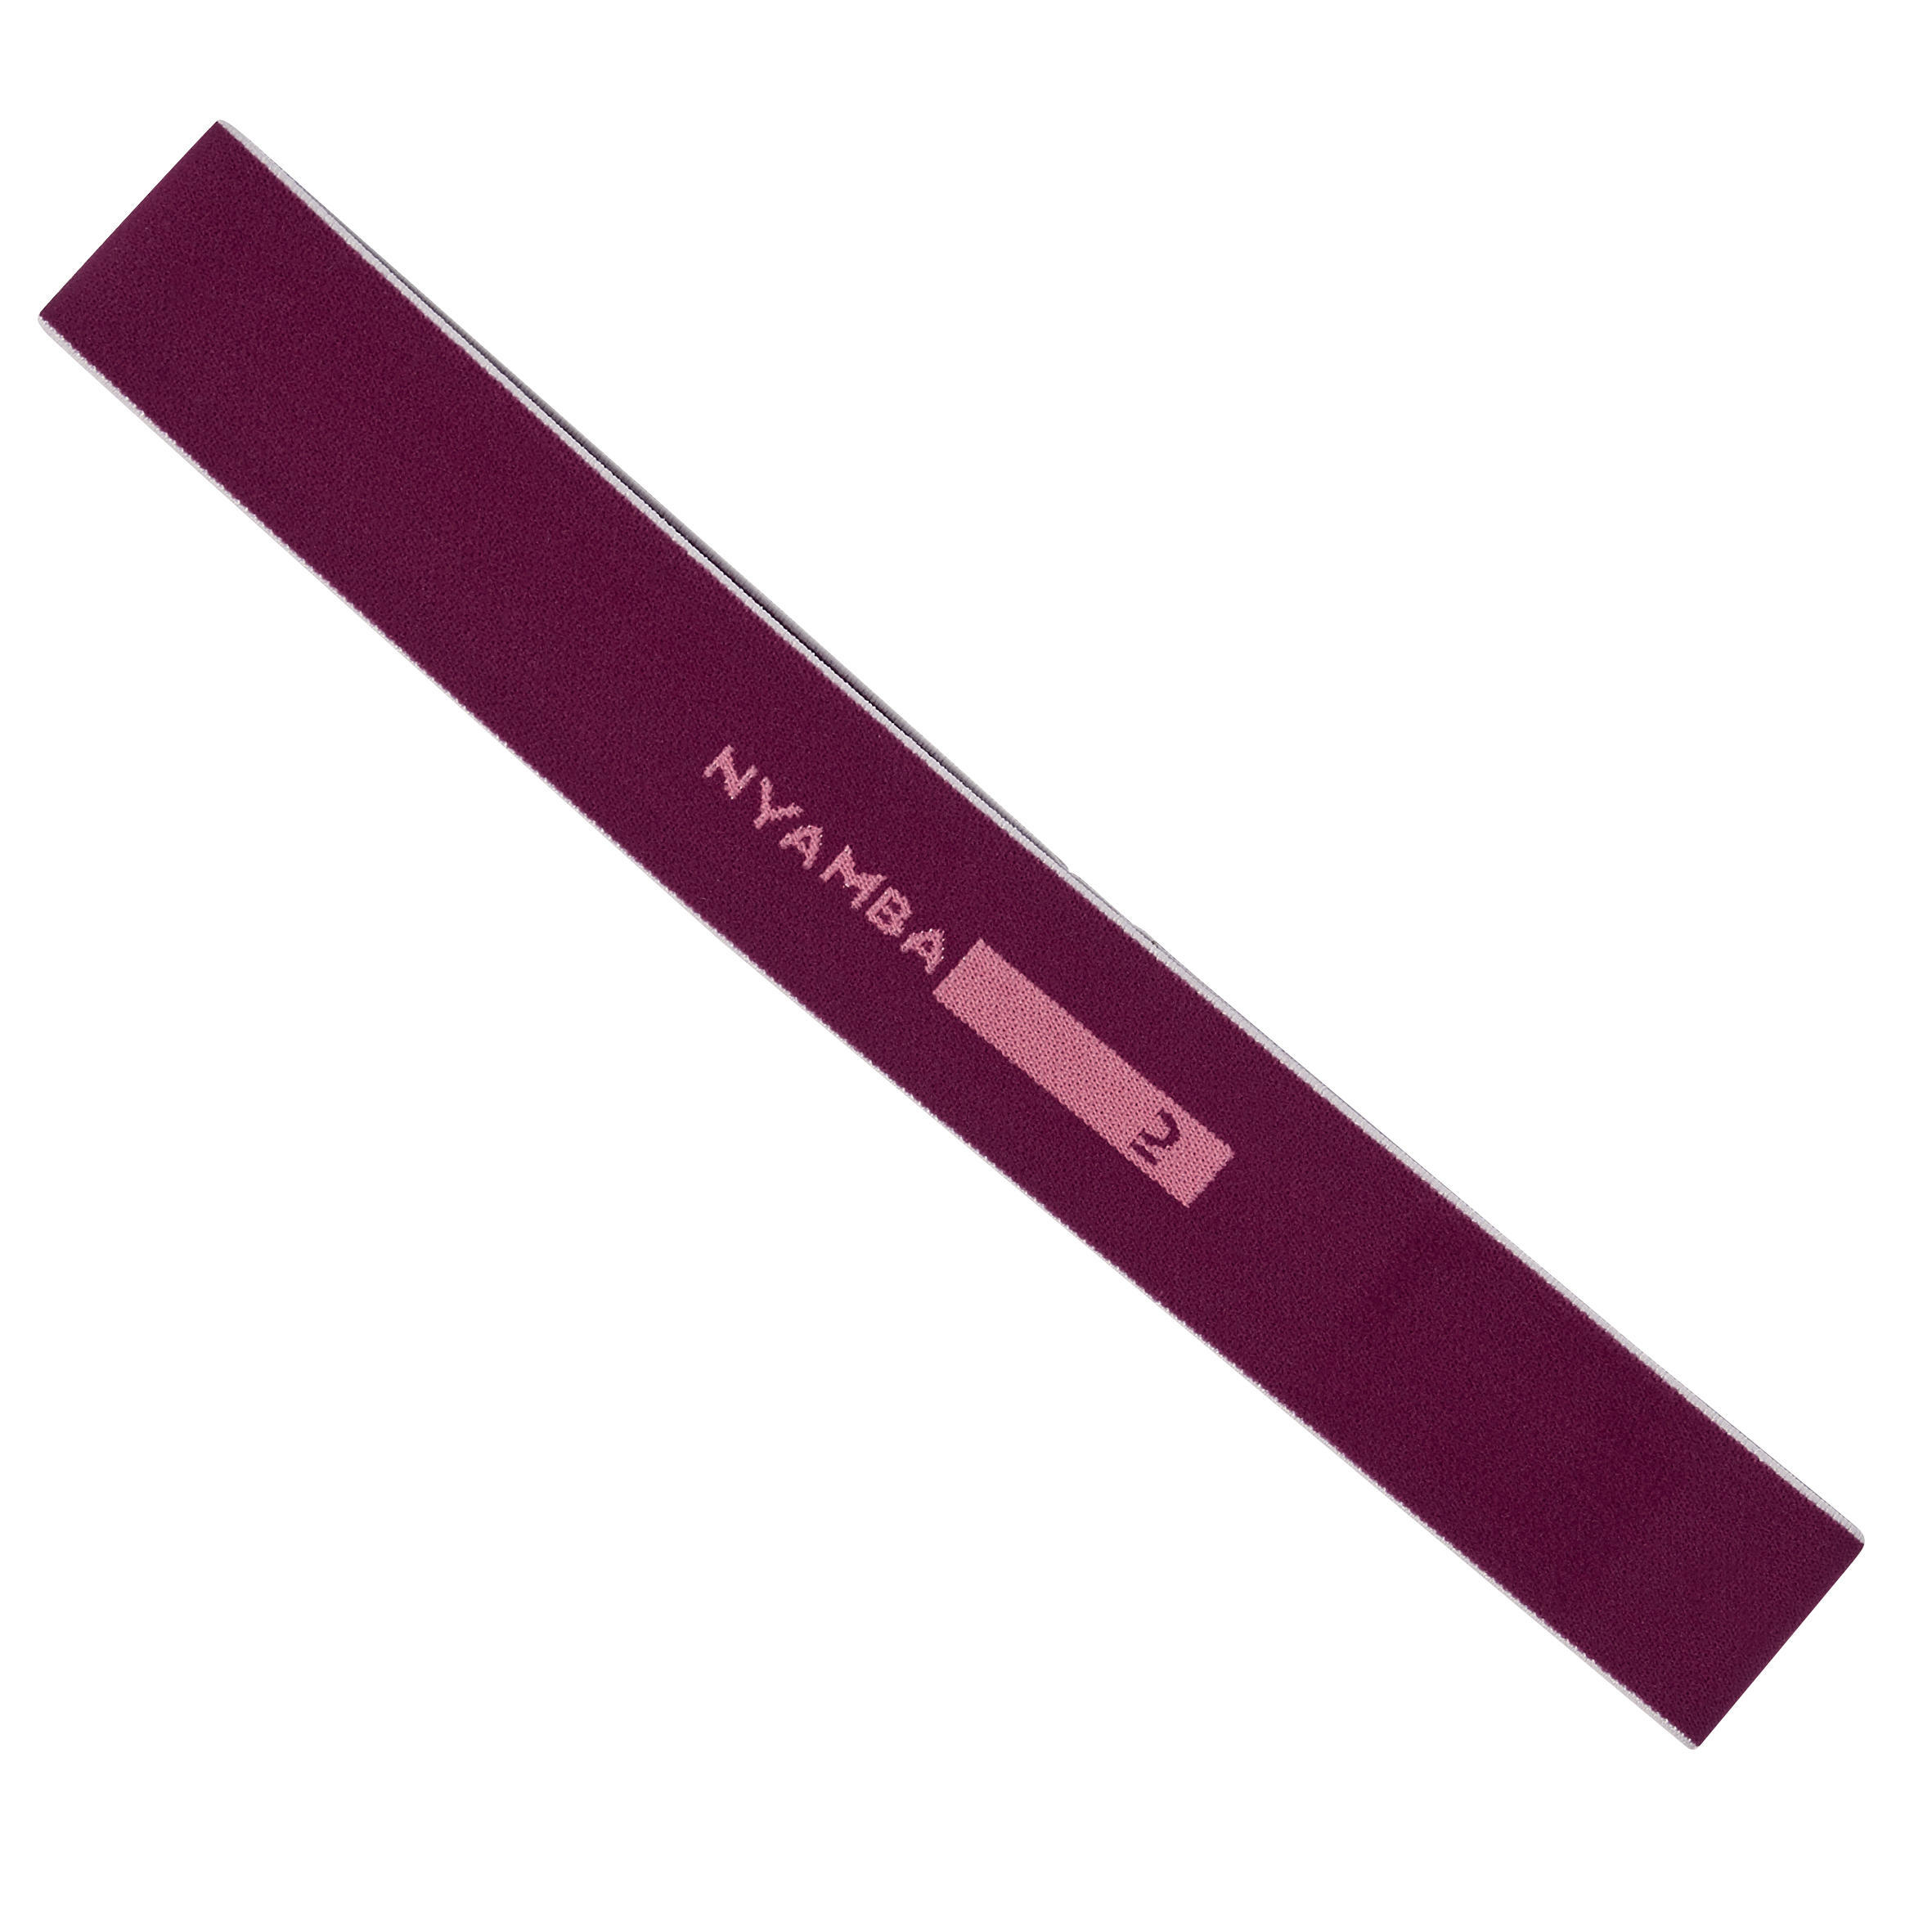 Резинка/резинка сопротивления 6 кг текстильная резинка - бордовая DOMYOS, фиолетовый/светло-розовый